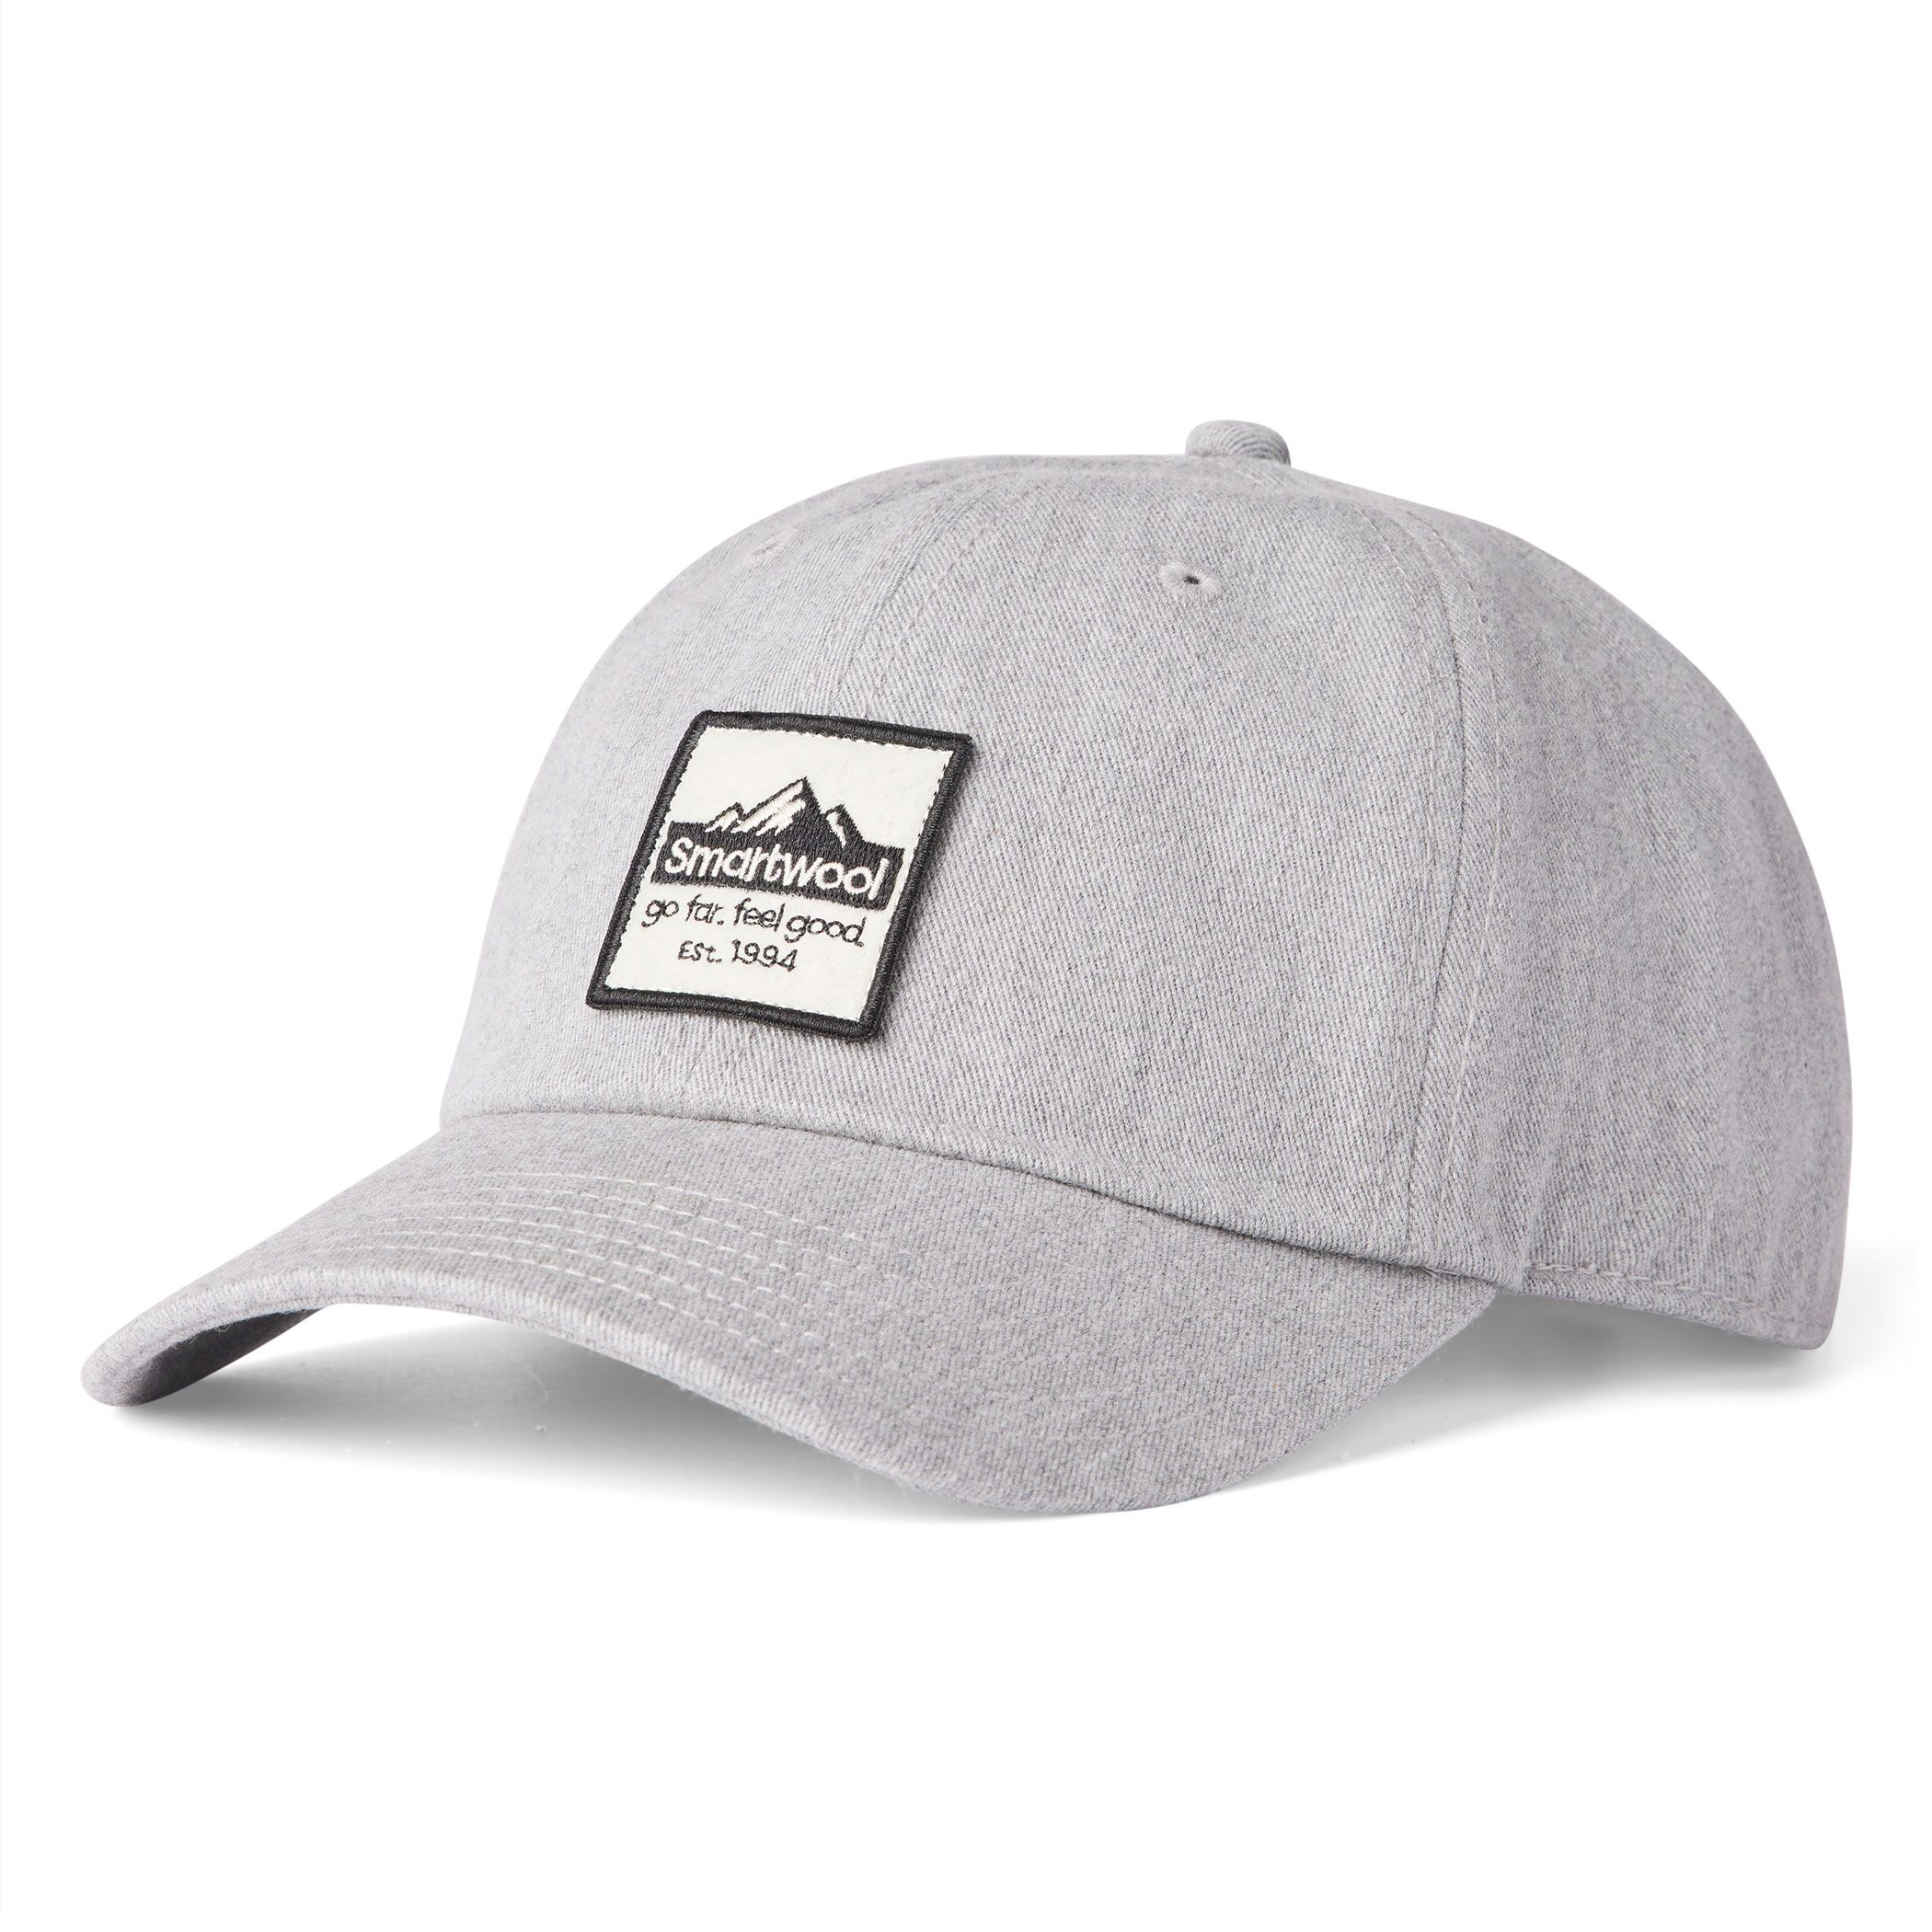 New AVALANCHE OUTDOOR SUPPLY COMPANY Medium Gray Strapback Hat Cap